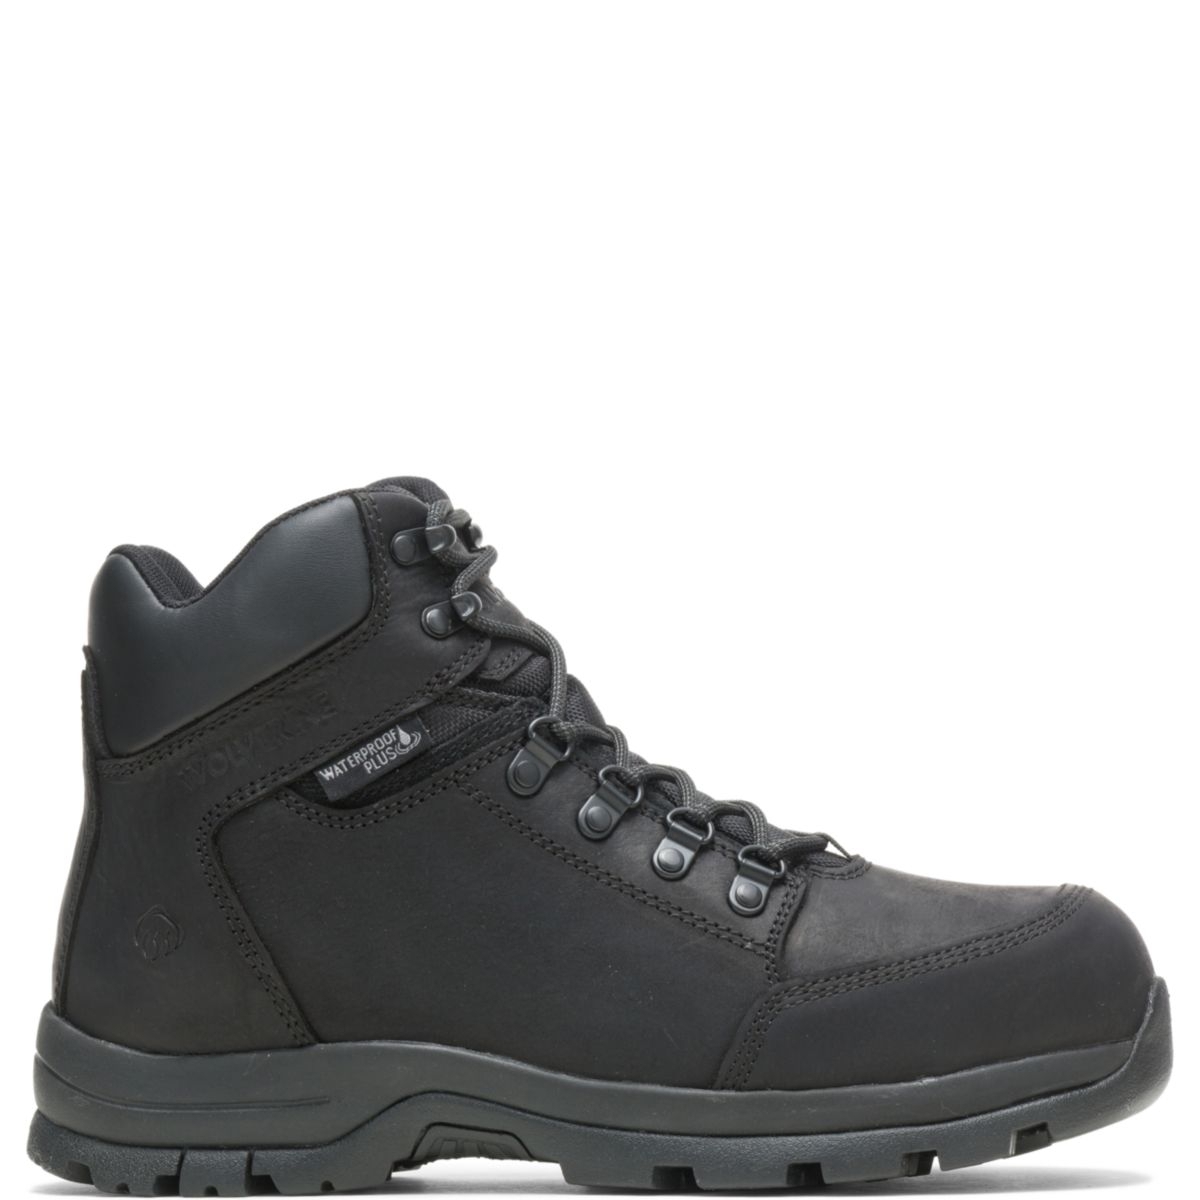 WOLVERINE Men's Grayson Steel Toe Waterproof Work Boot Black - W211042 BLACK - BLACK, 11 X-Wide